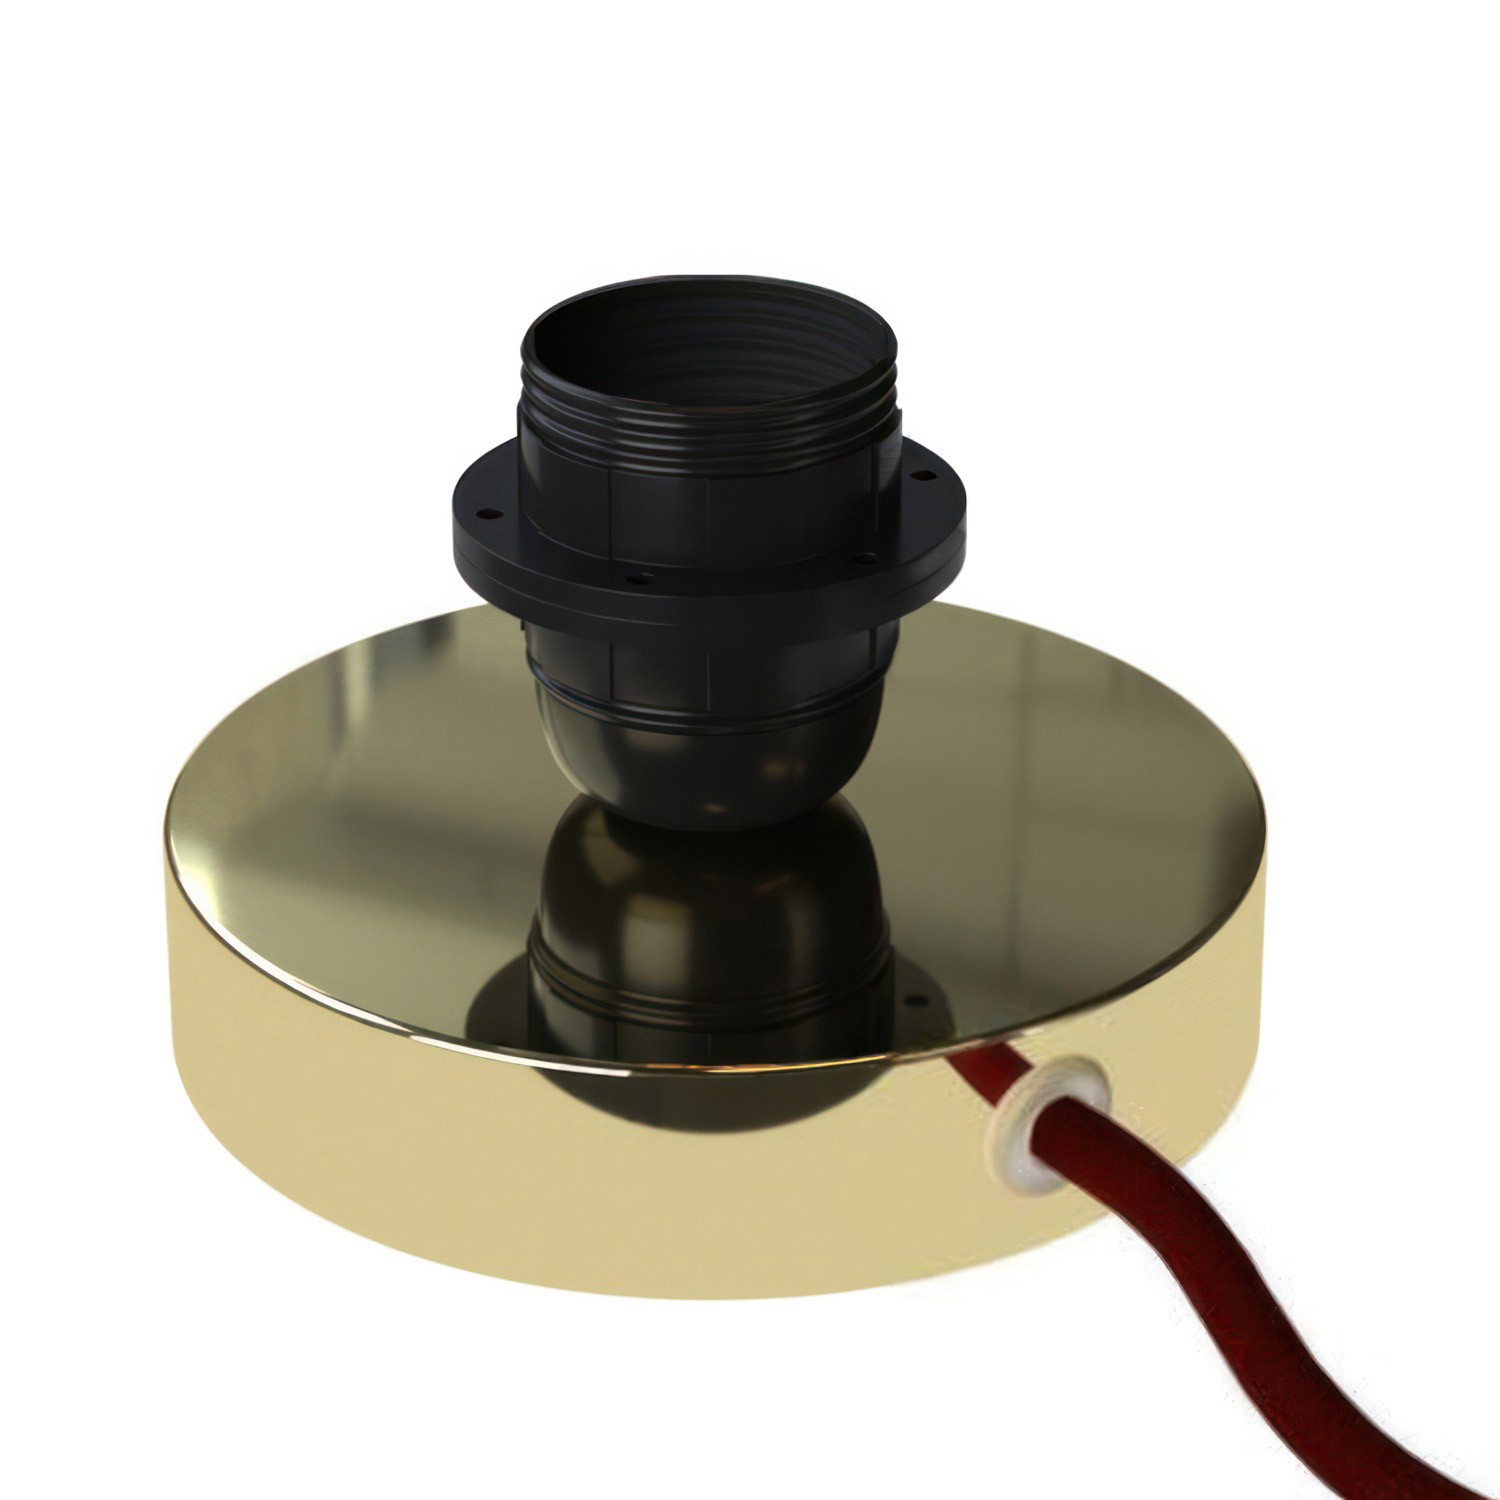 Posaluce pour abat-jour - Lampe de table en métal